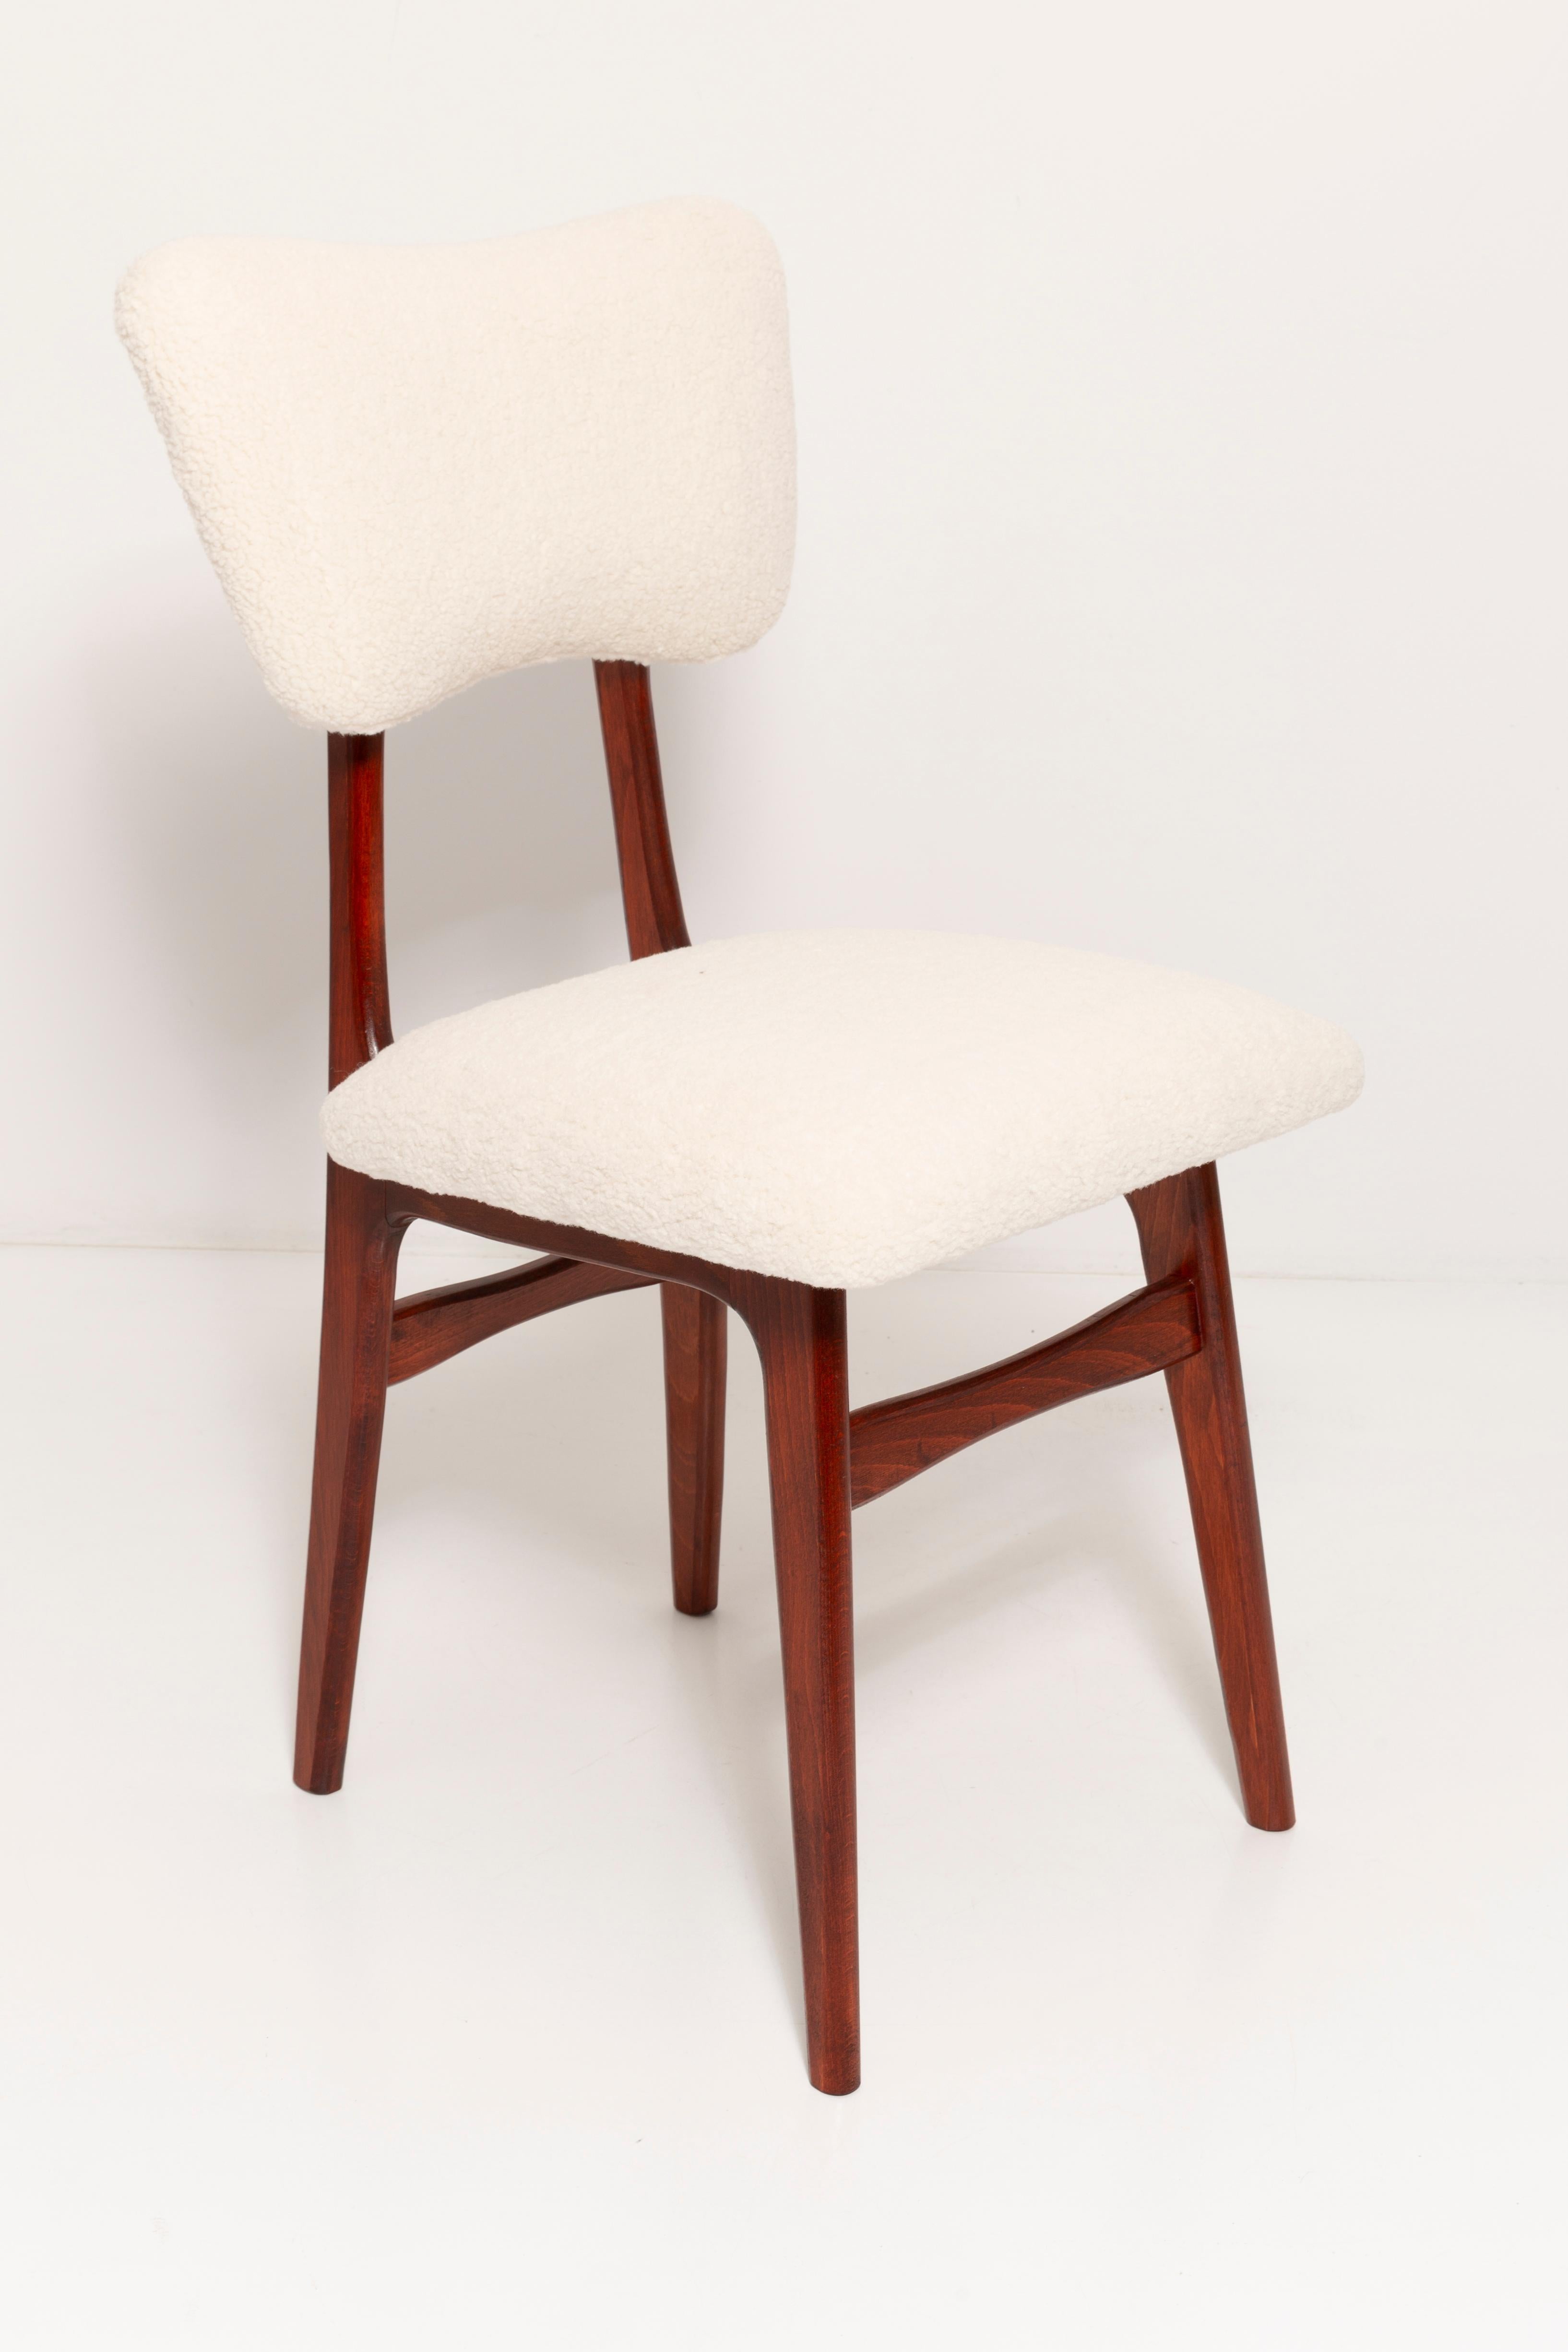 Stuhl entworfen von Prof. Rajmund Halas. Hergestellt aus Buchenholz in der Farbe Kirsche. Der Stuhl wurde komplett neu gepolstert, die Holzarbeiten wurden aufgefrischt. Sitz und Rückenlehne sind mit cremefarbenem, strapazierfähigem und angenehm zu